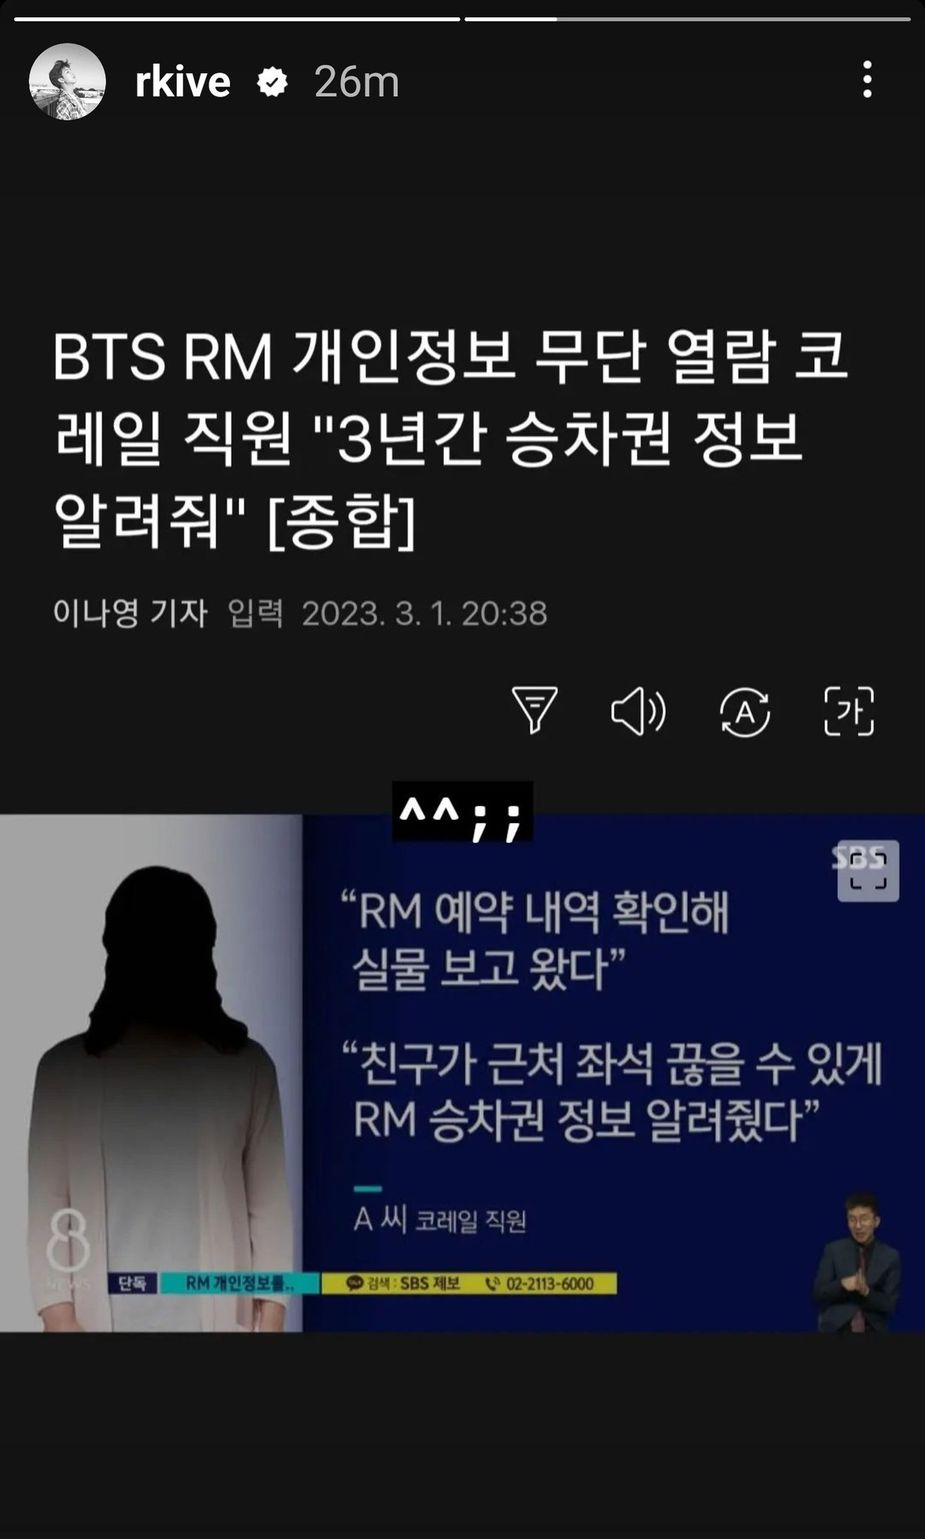 Titre du titre « Un employé de Korail qui a divulgué des informations personnelles non autorisées de BTS RM a divulgué des informations sur les billets pendant 3 ans » |  @rkive/Instagram